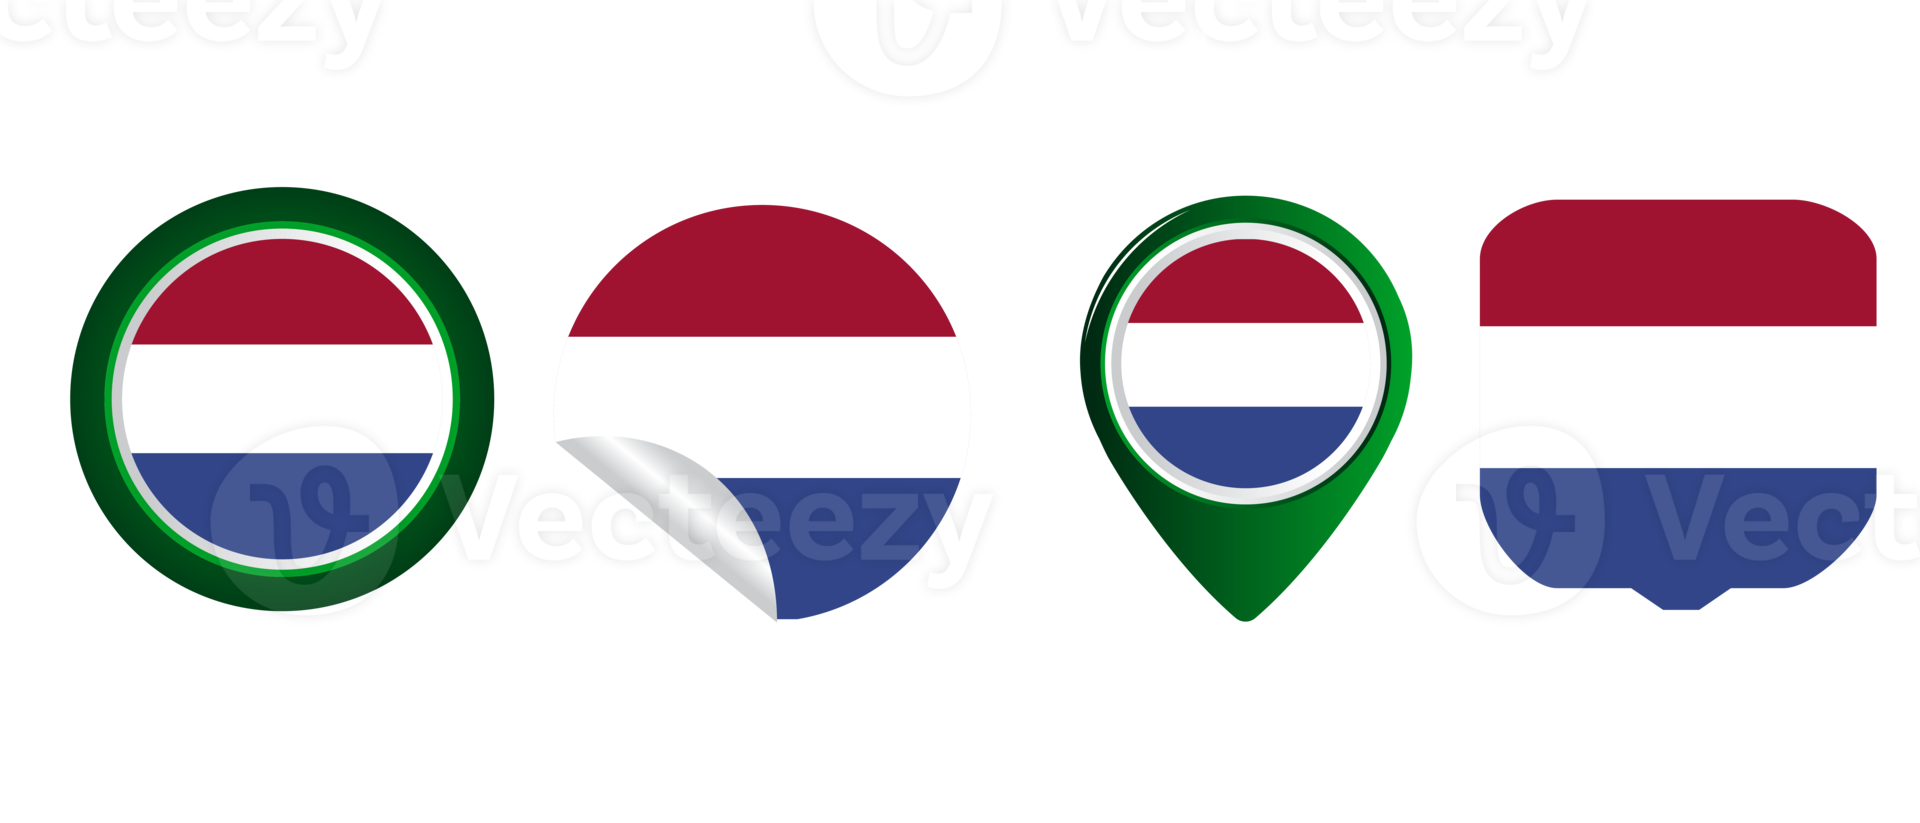 niederländische flagge flache symbol symbol illustration png